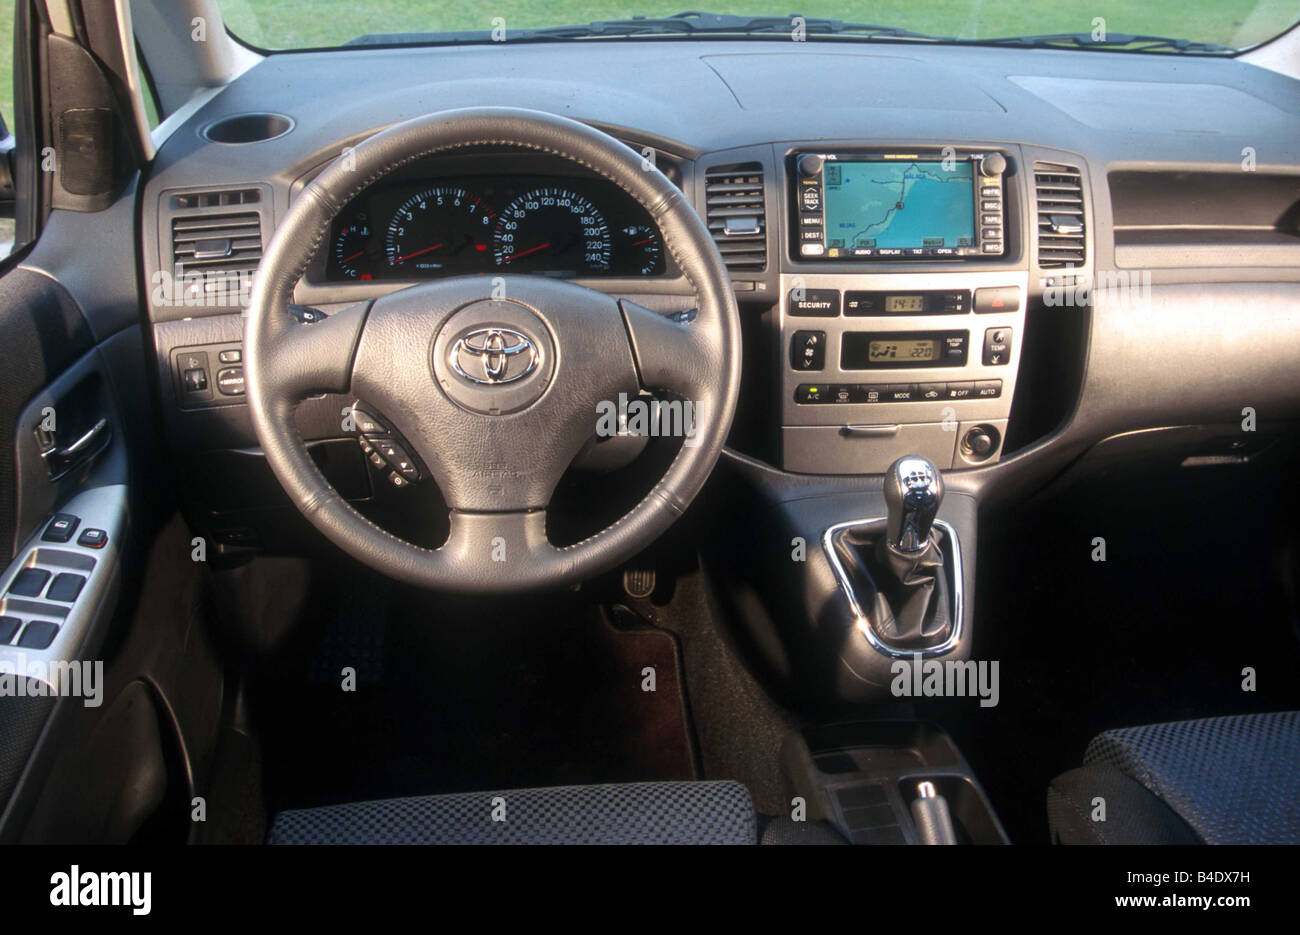 Auto, Toyota Corolla 1.8 umzukehren, Van, Modell Jahr 2002